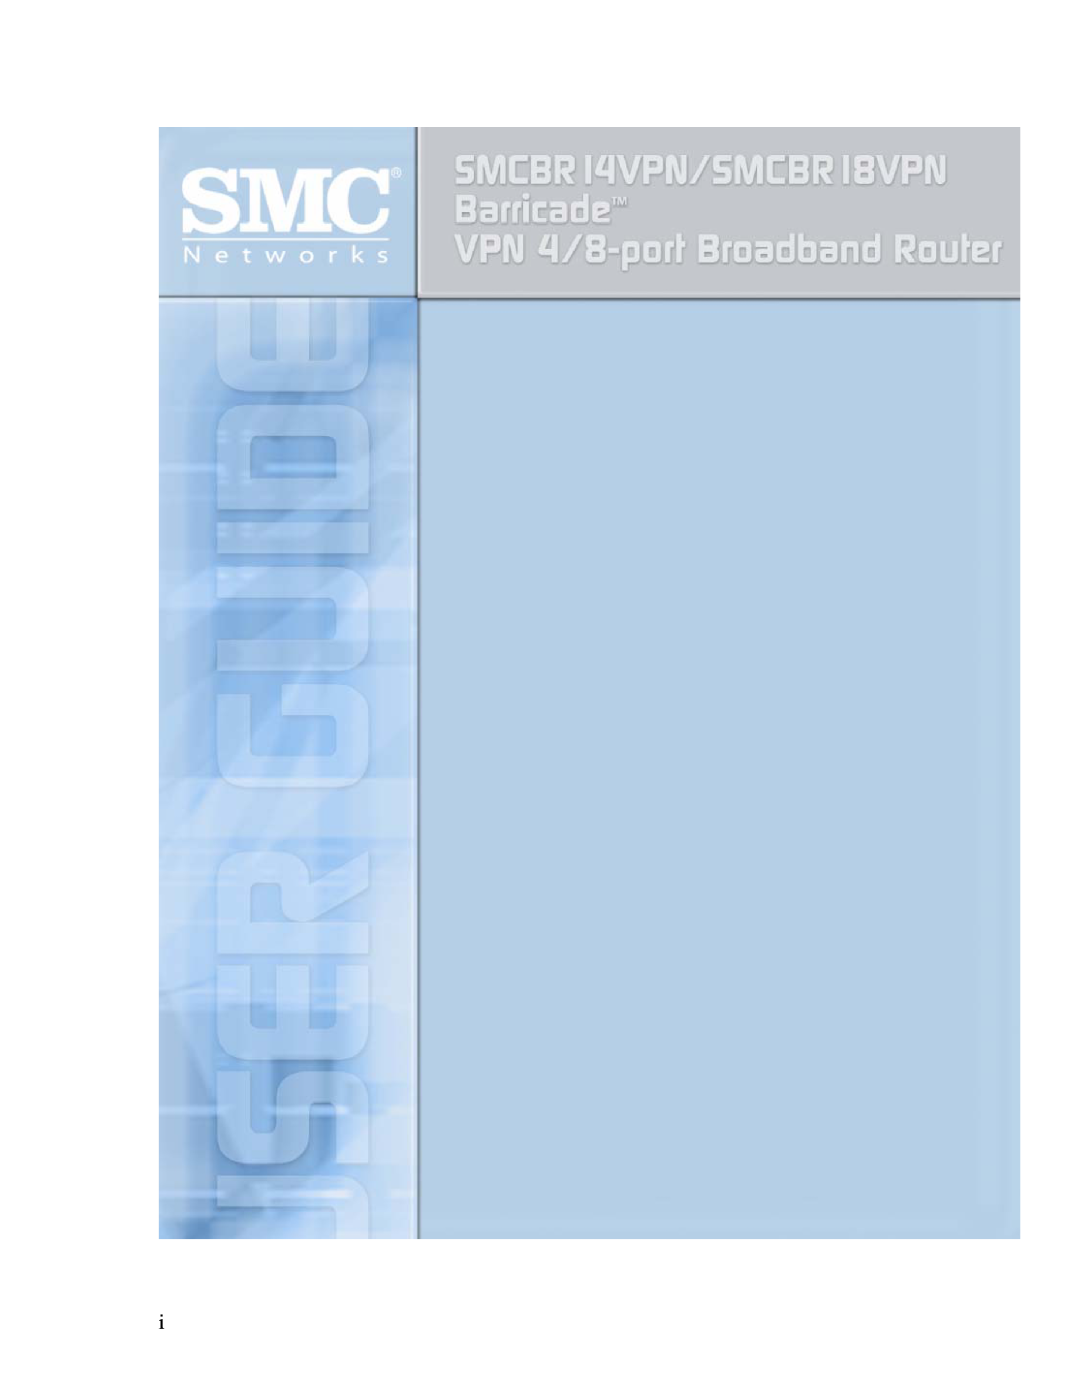 SMC Networks BR14VPN, SMCBR 18VPN manual 